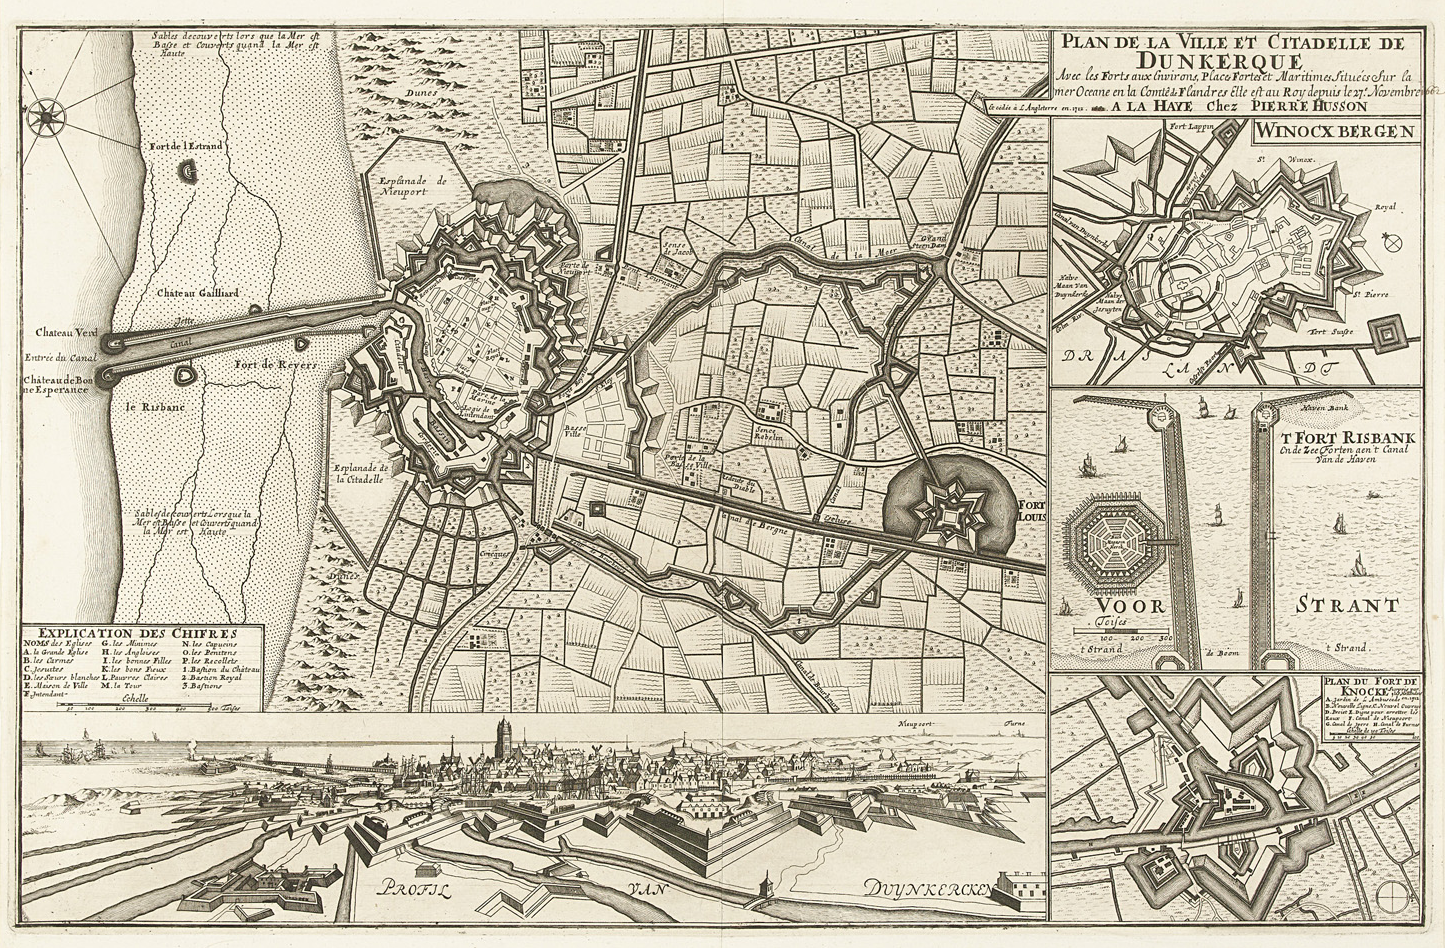 Plan de la ville et citadelle de Dunkerque en 1712